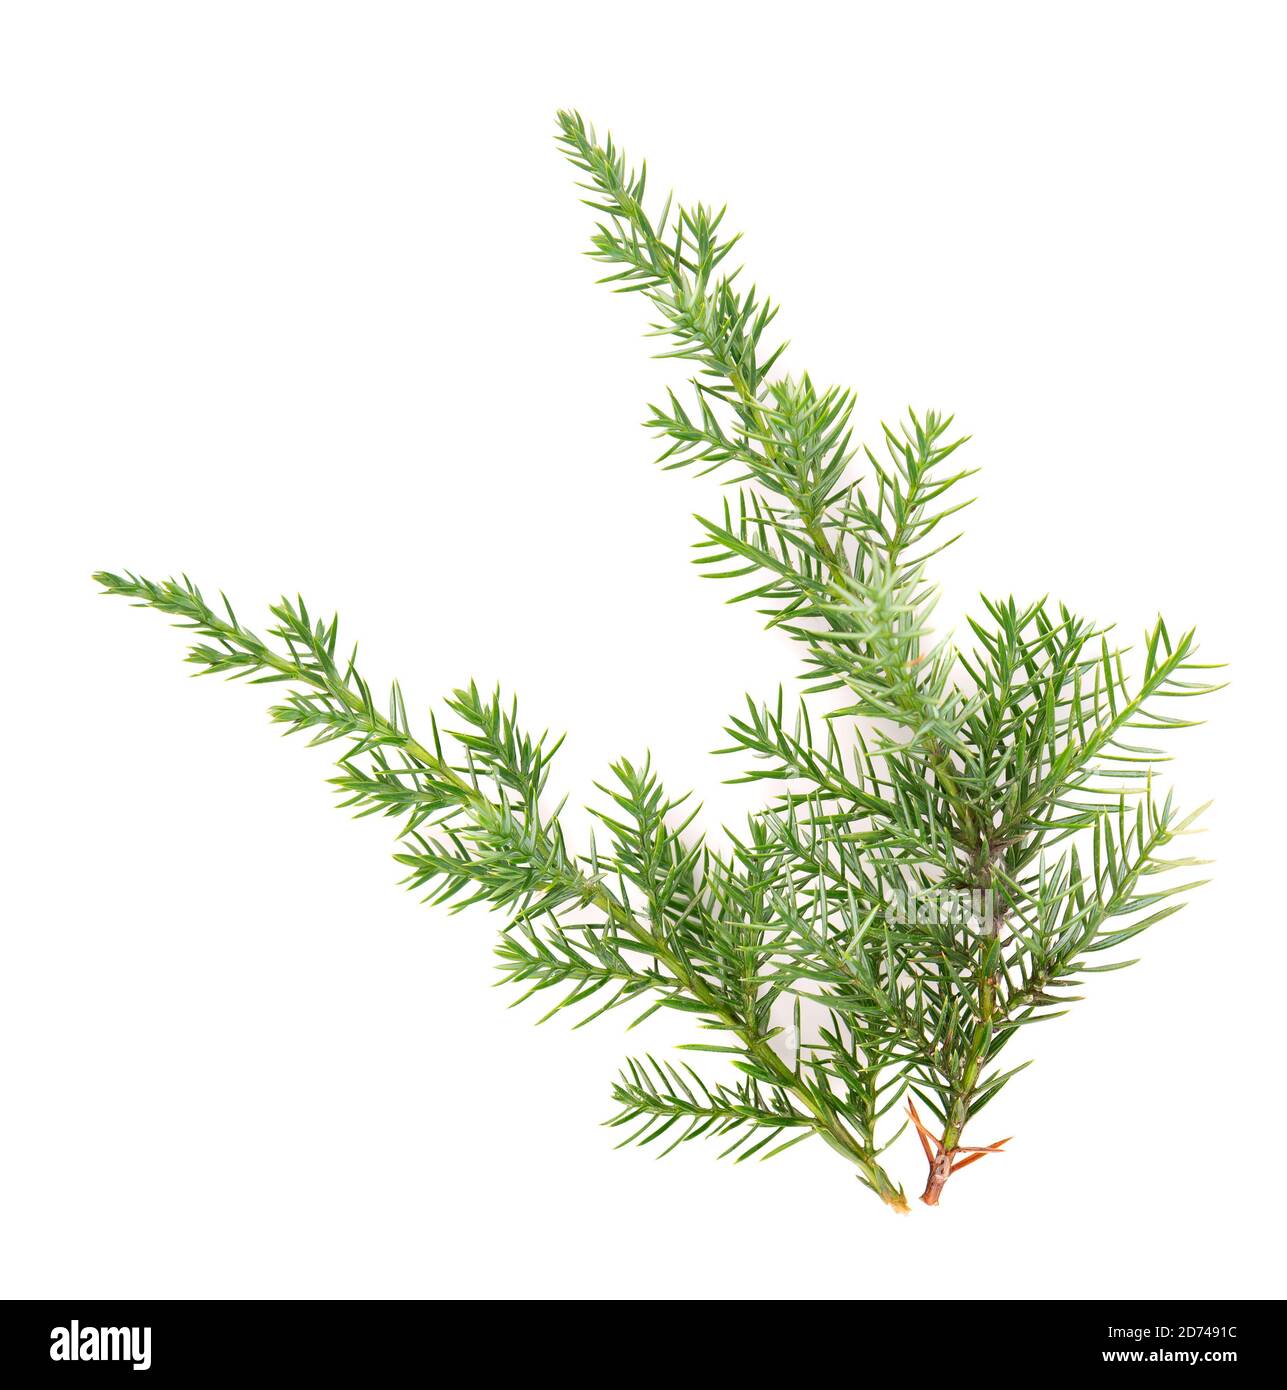 Branche verte Juniper, isolée sur fond blanc. Plantes ornementales pour la conception de paysage. Banque D'Images